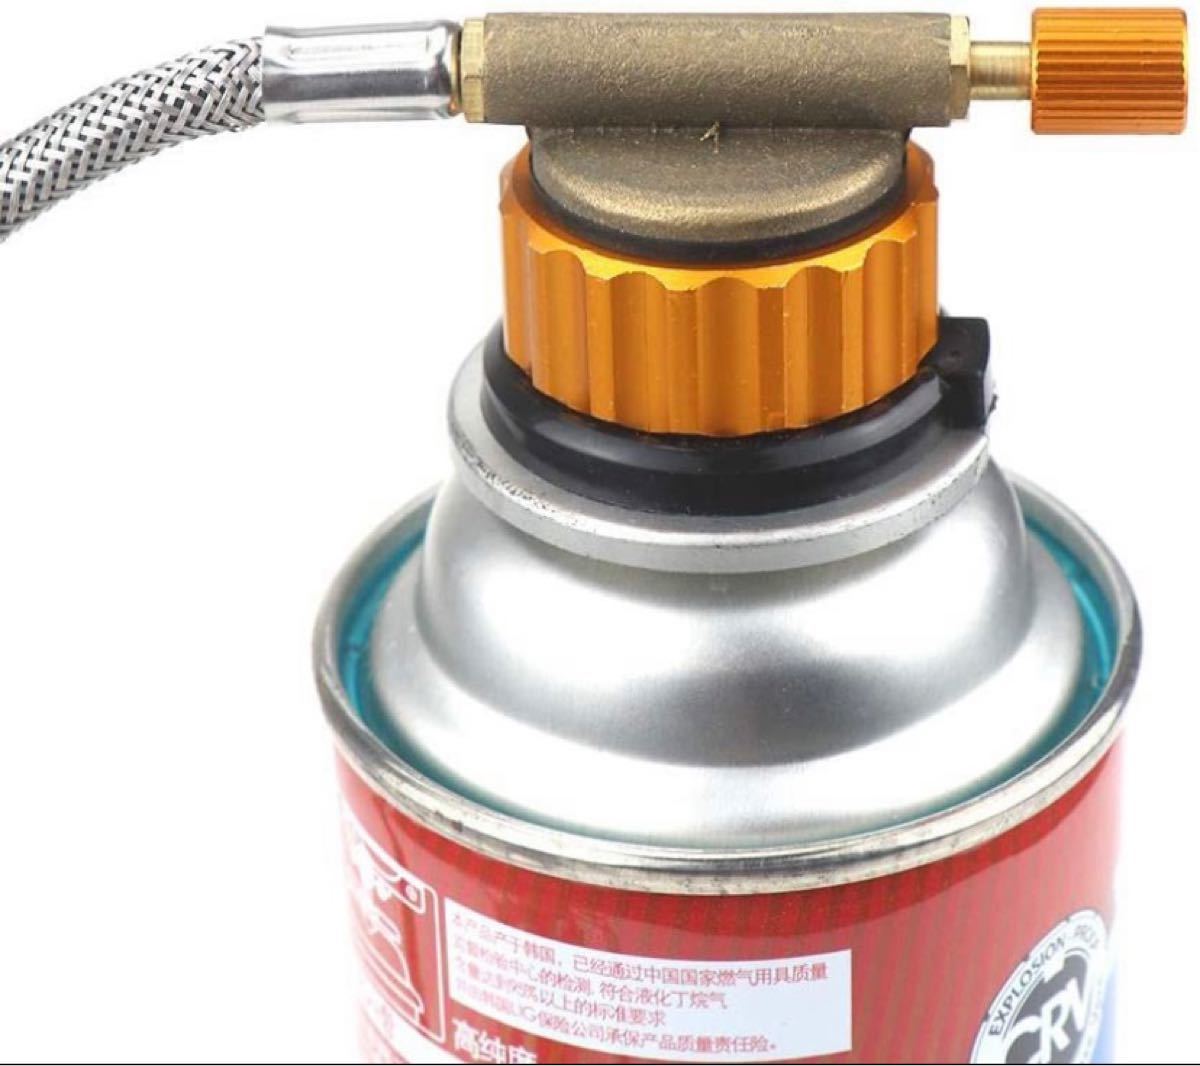 ガス缶 変換アダプター ガス変換器カセットガスアダプターODCB缶詰め替えスペア